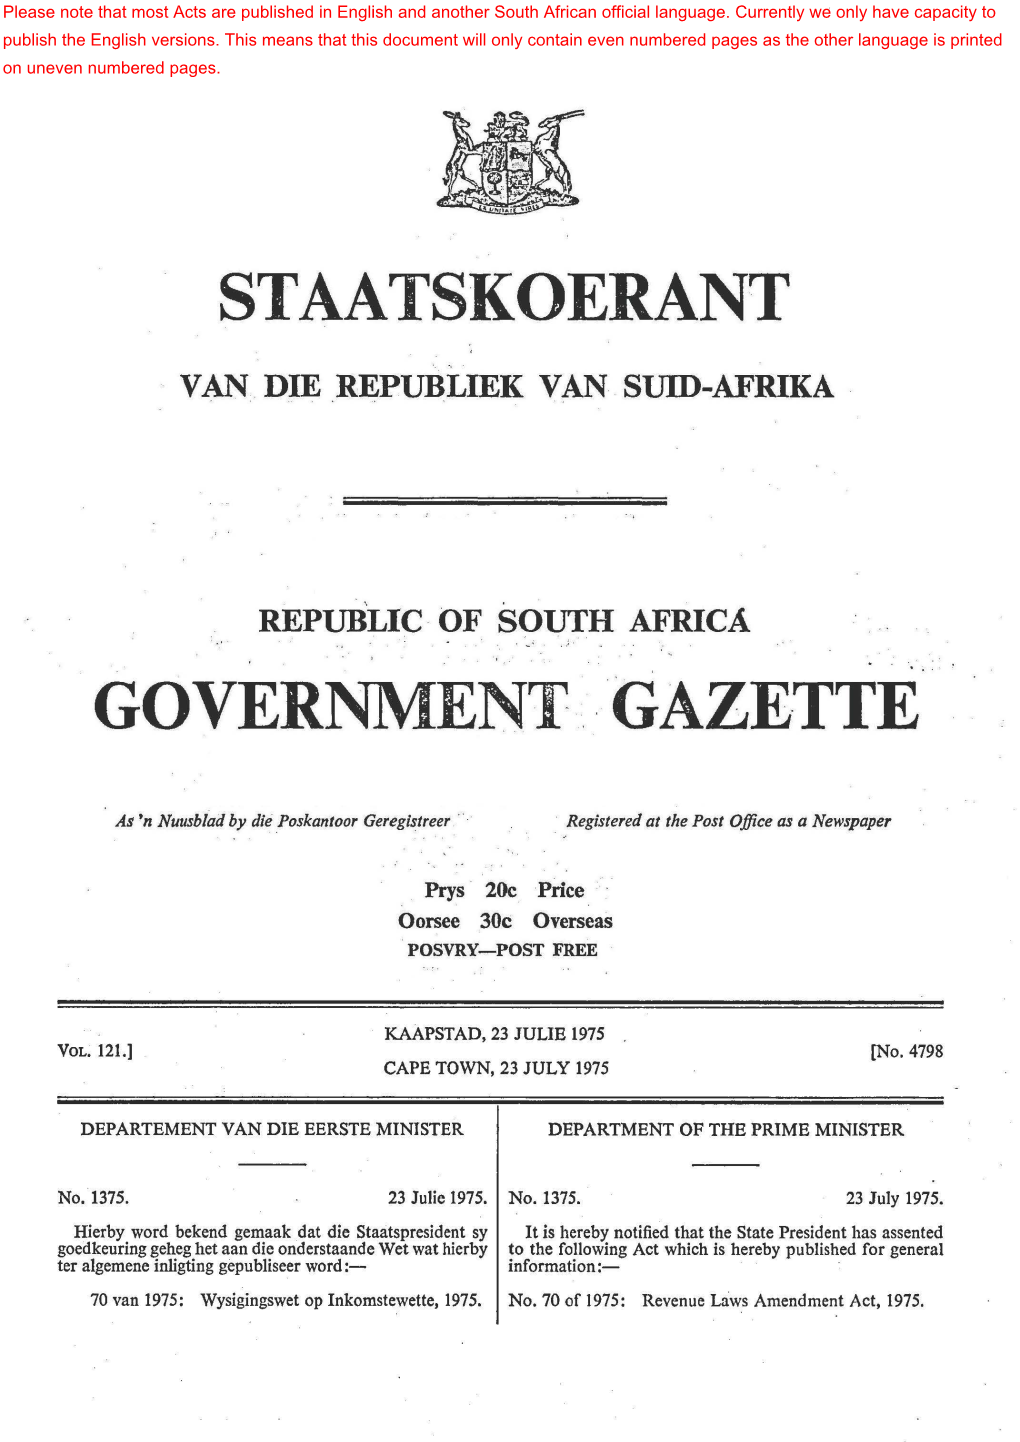 Revenue Laws Amendment Act, 1975